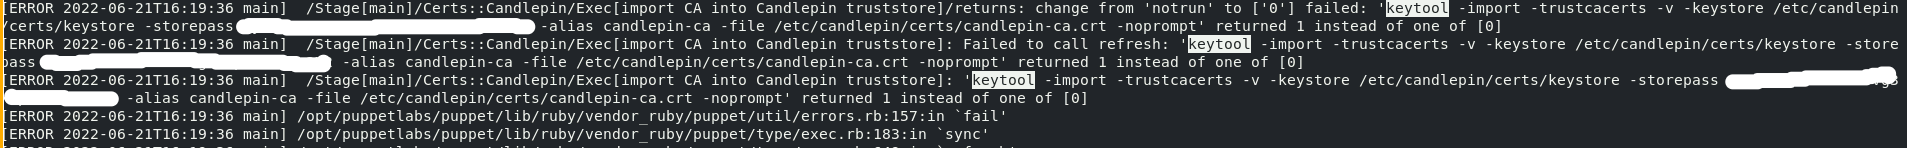 satellite-installer keytool error